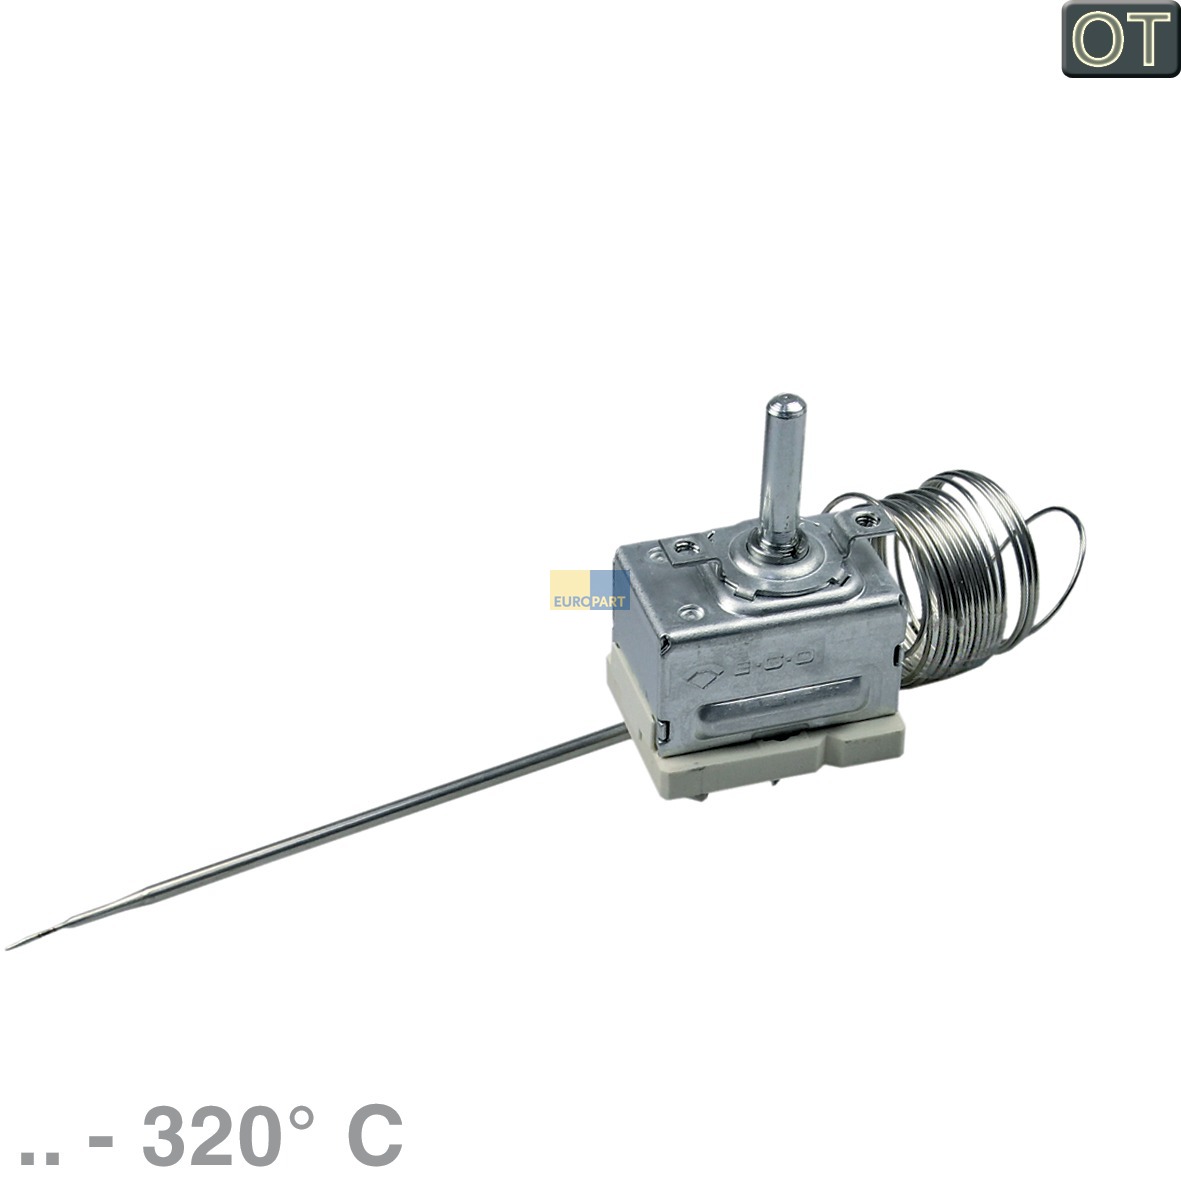 Thermostat NEFF  EGO 55.17069.030 320°C für Doppelbackofen Herd (BD-00489378) von BSH (Bosch-Siemens-Hausgeräte)